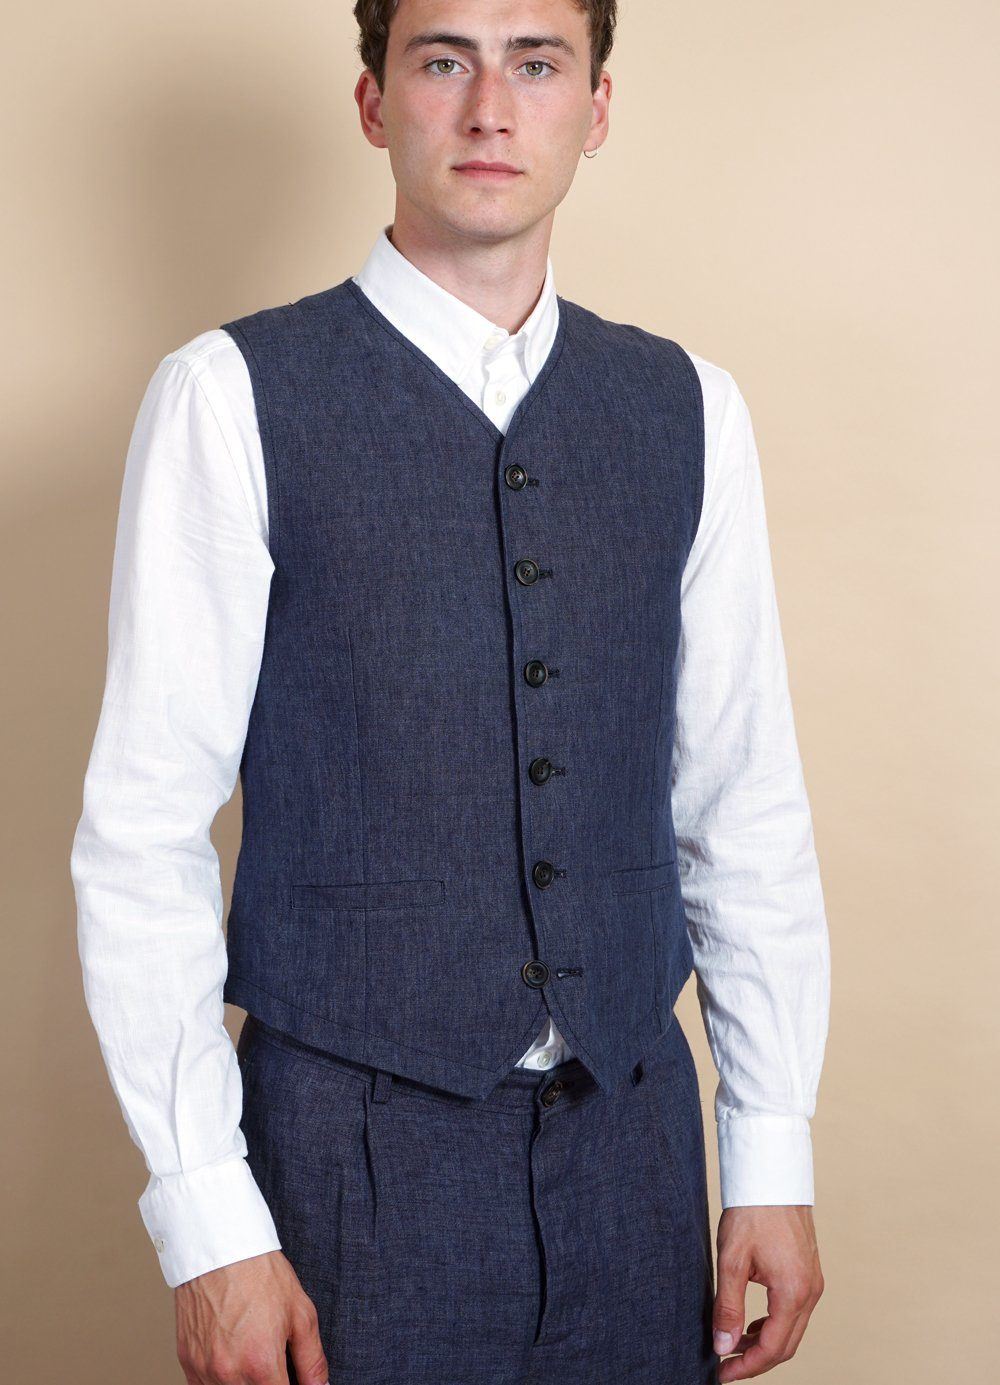 HANSEN GARMENTS - KALLE | Casual Classic Vest | Blue Delave - HANSEN Garments